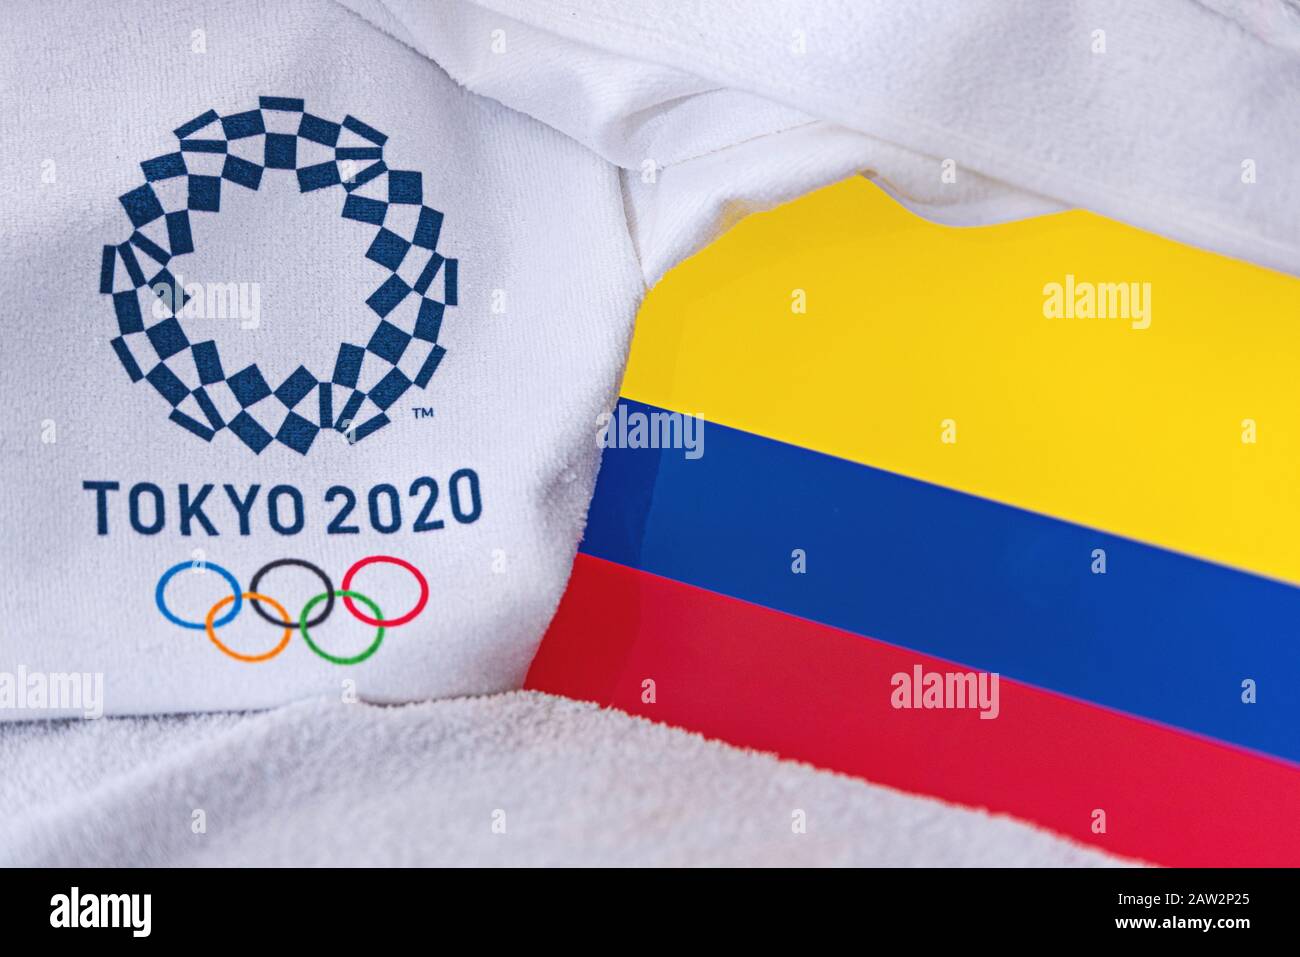 TOKYO, JAPON, FÉVRIER. 4, 2020: Drapeau national de la Colombie, logo officiel des Jeux olympiques d'été à Tokyo 2020. Fond blanc Banque D'Images